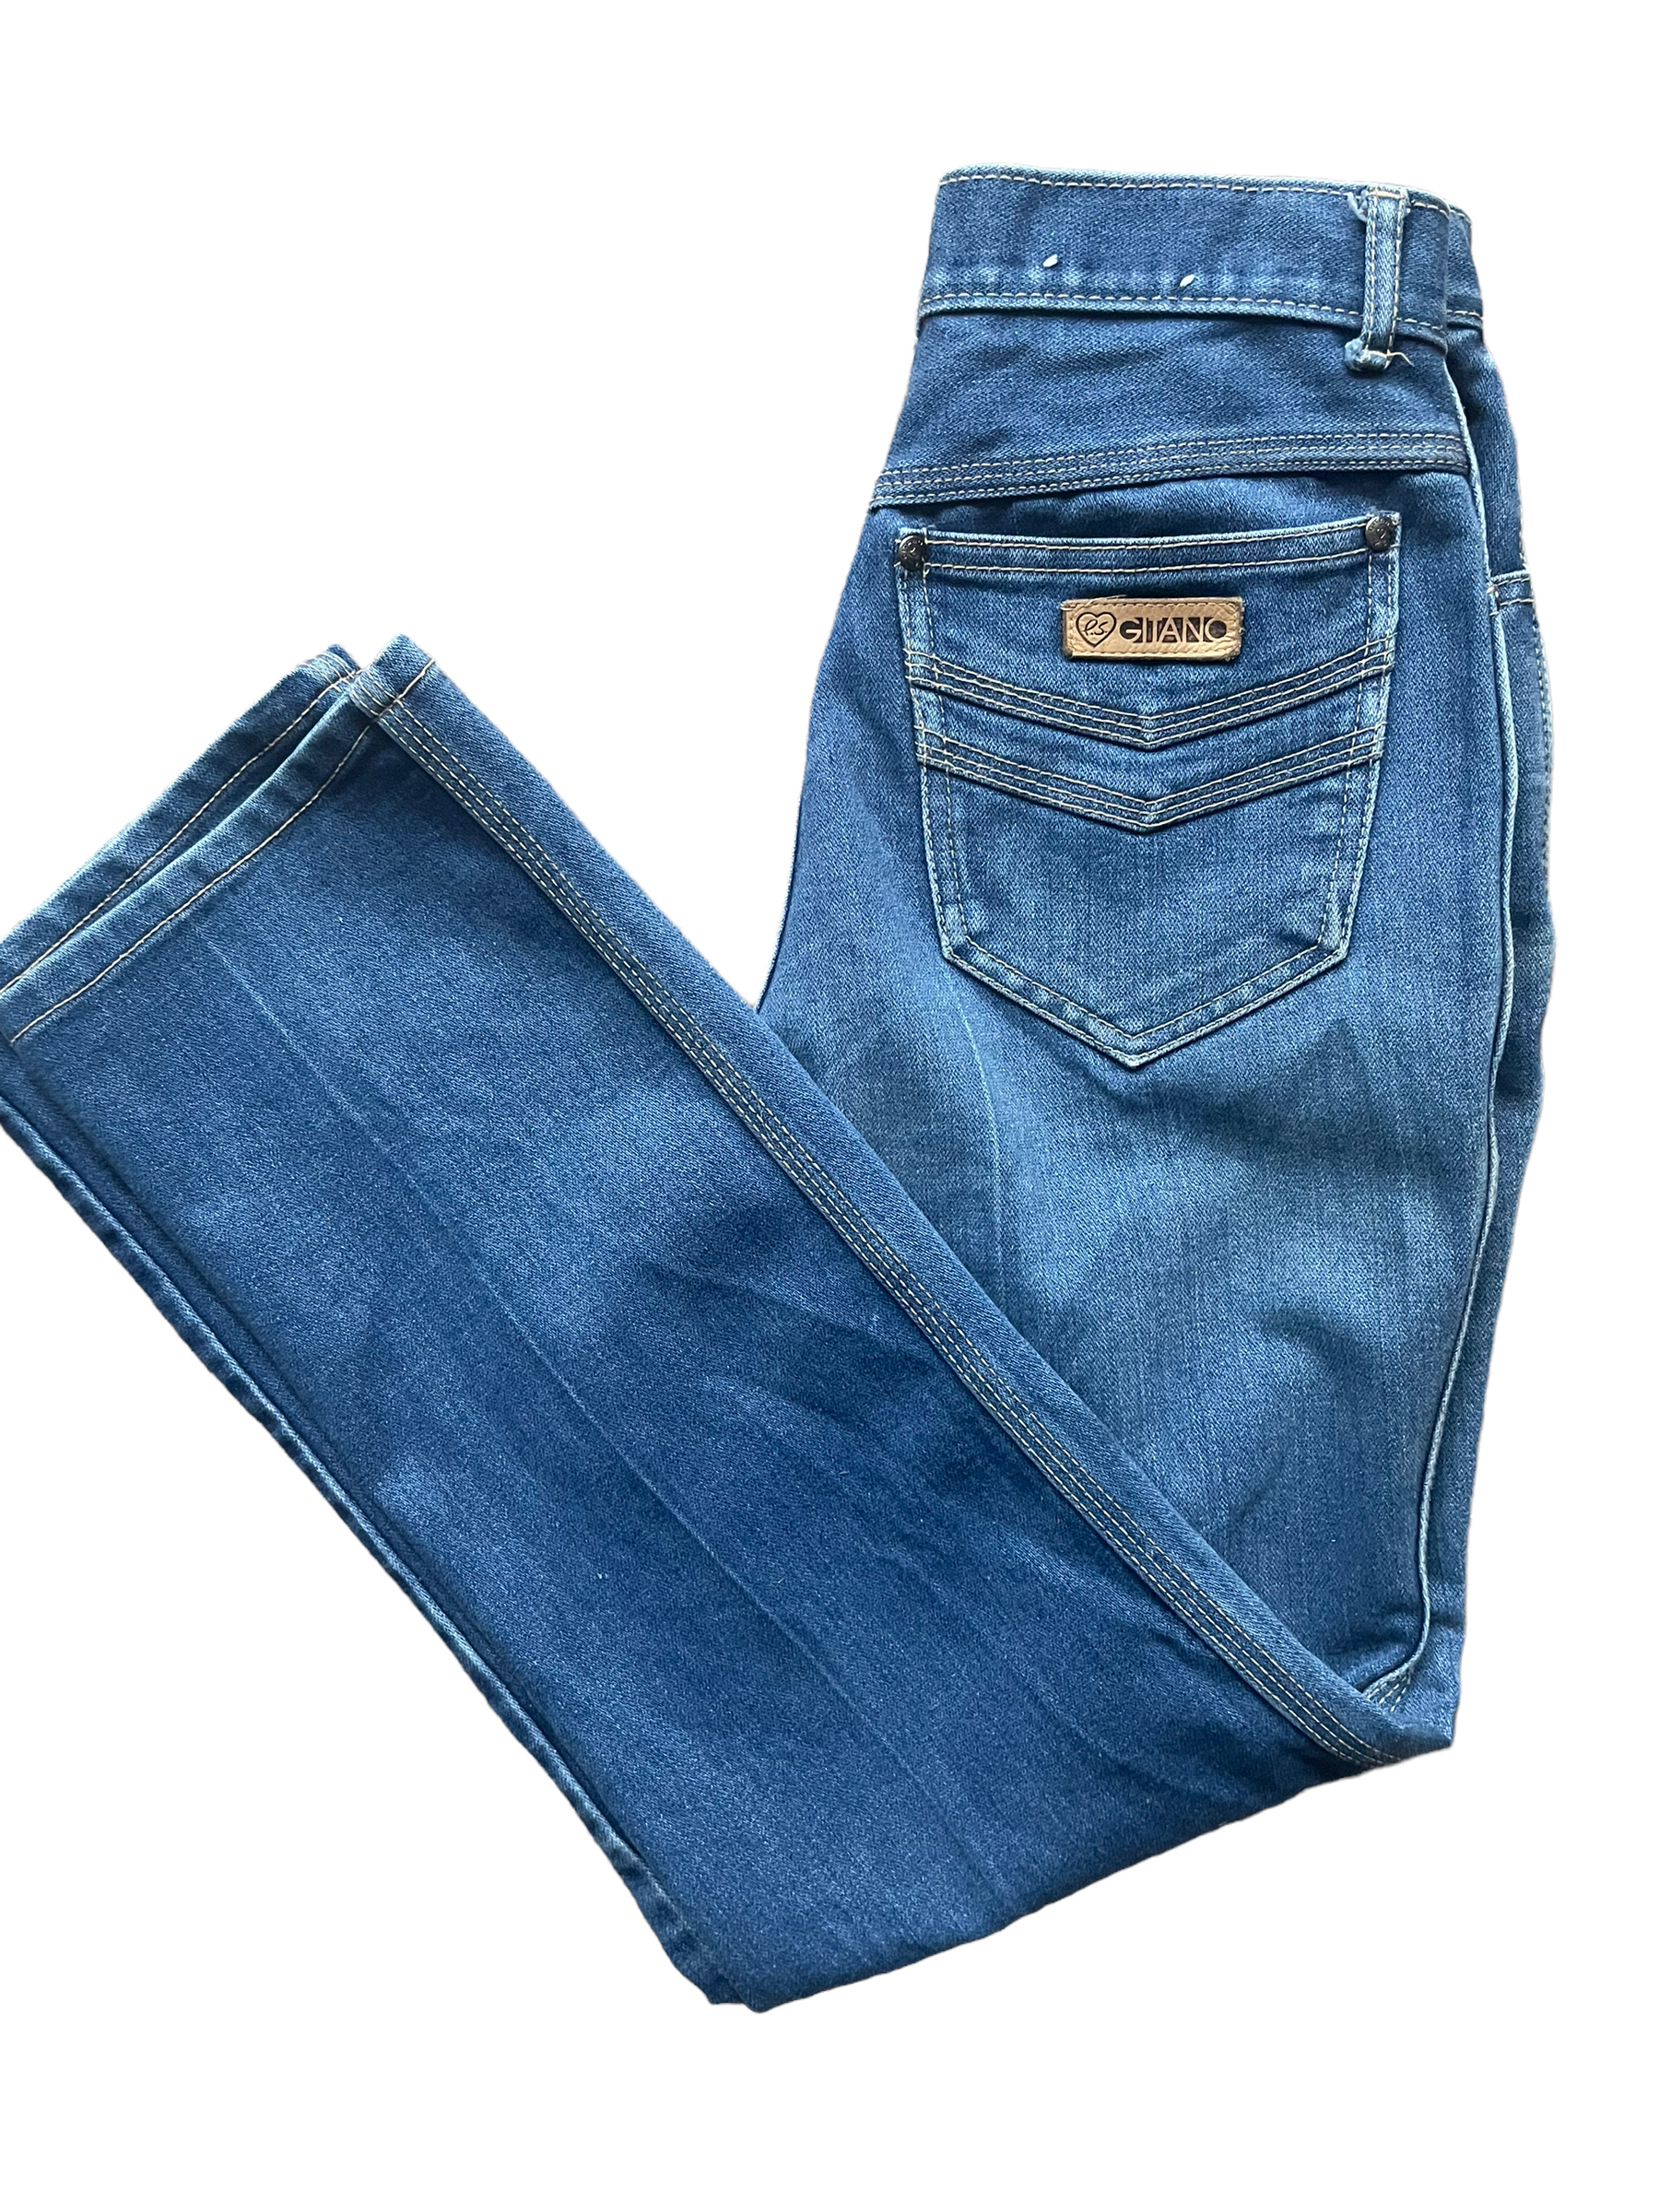 Ladies Jeans, Denim Shop